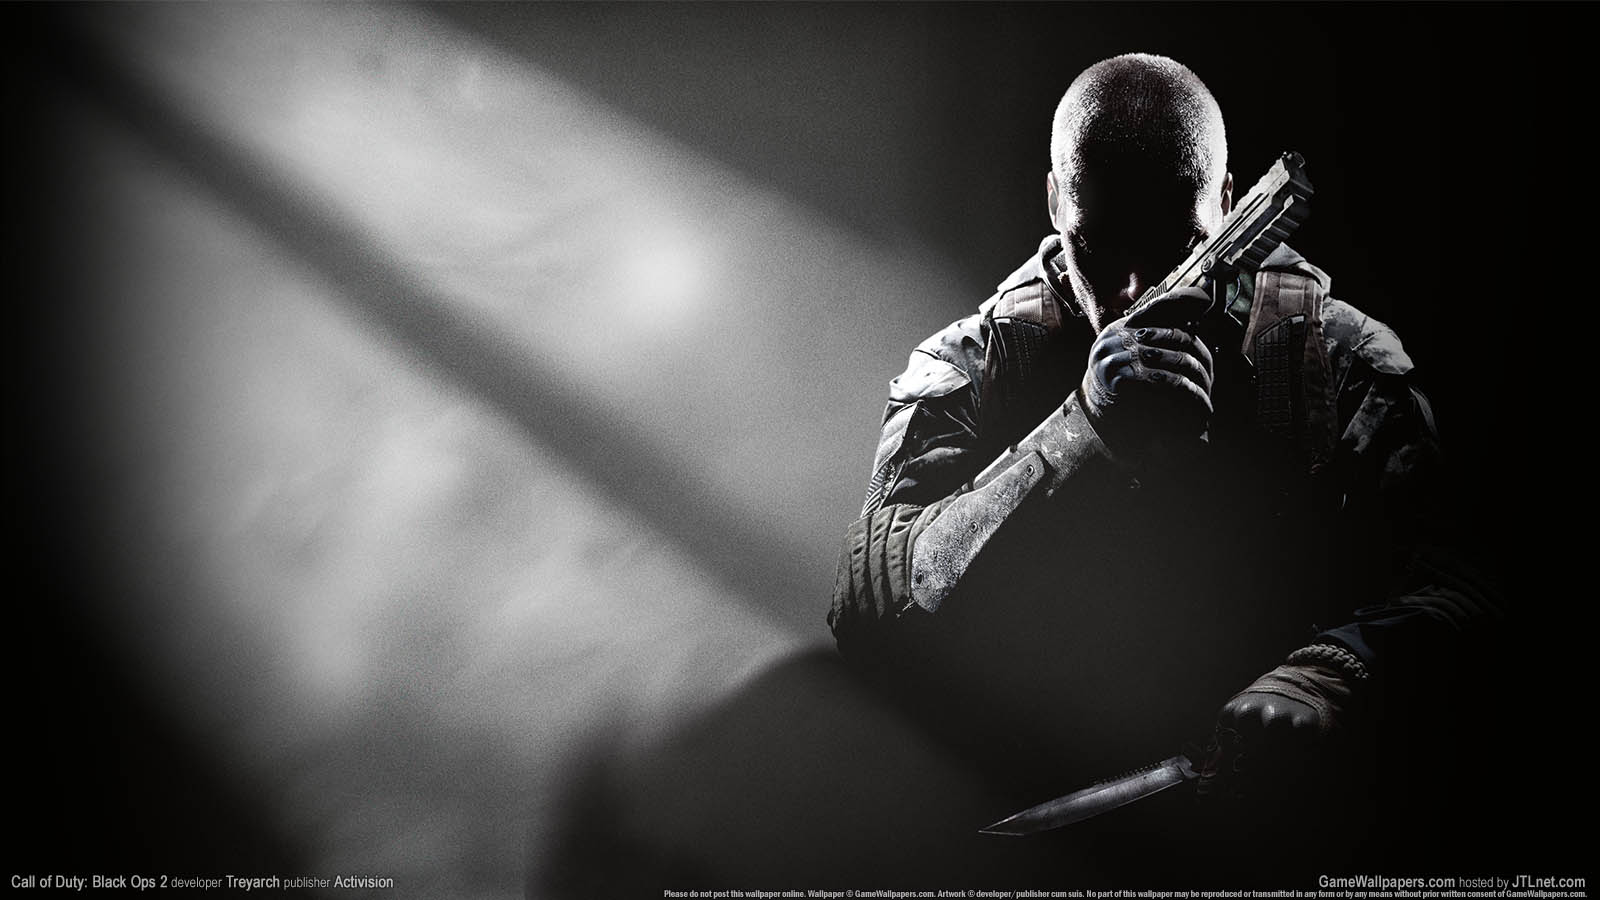 Call of Duty: Black Ops 2 fond d'cran 01 1600x900